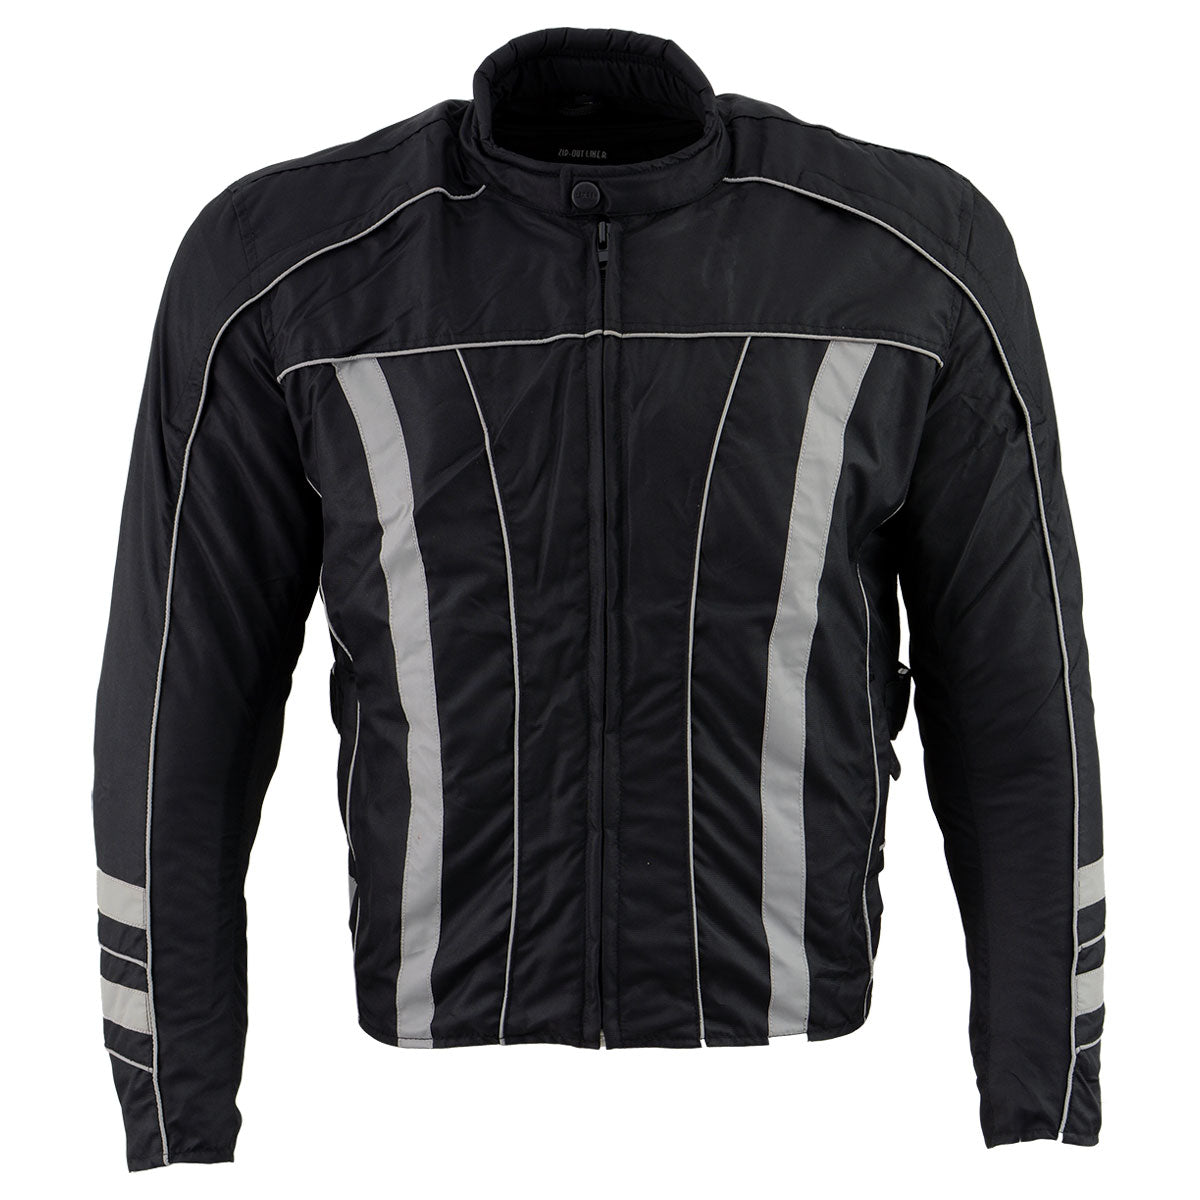 NexGen Men's SH2389 Black and Grey Armored Racer Jacket